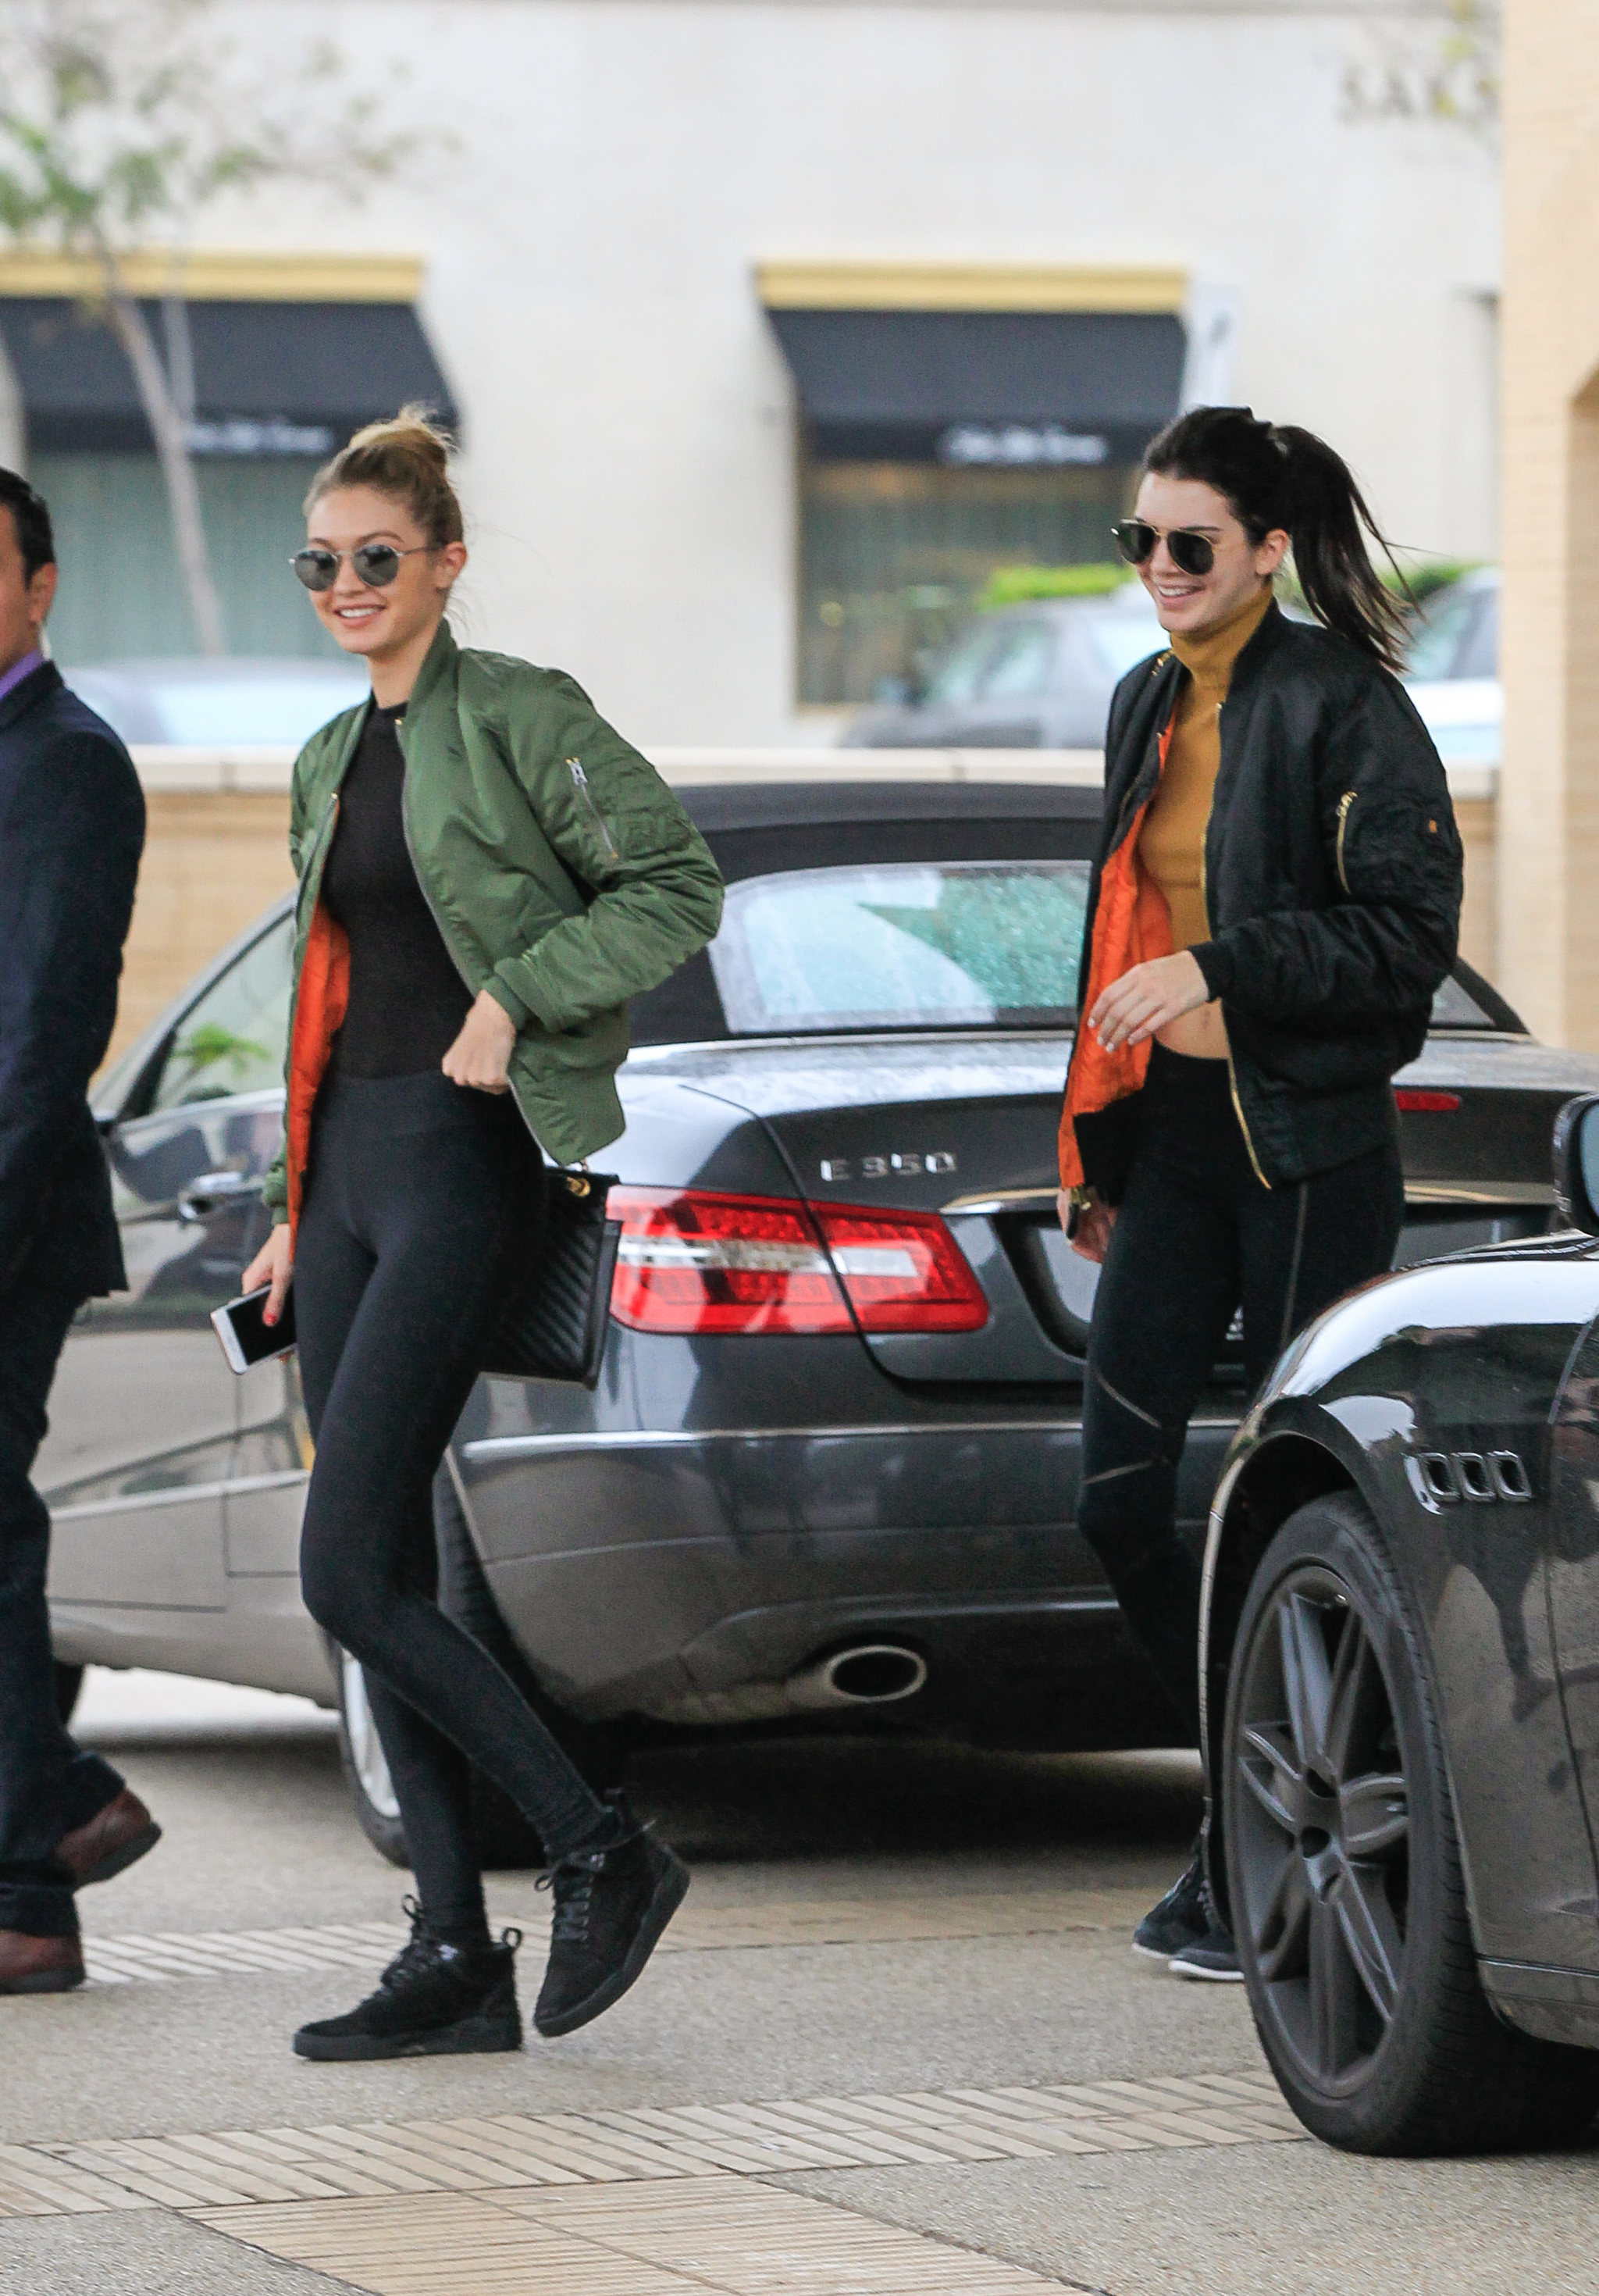 Gigi Hadid y Kendall Jenner en Los Angeles con la bomber verde y negra con el forro naranja butano.